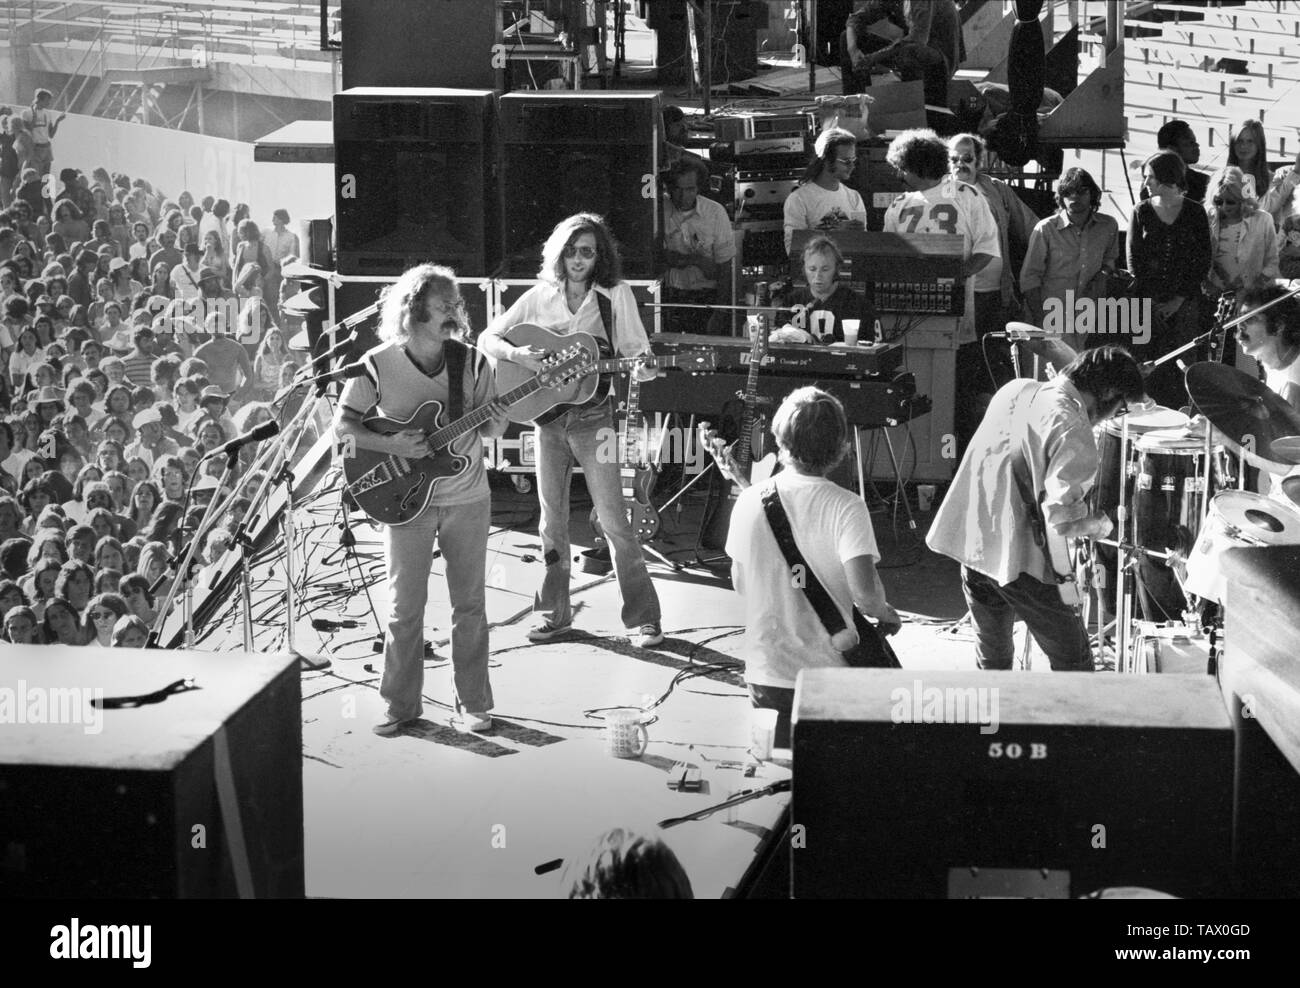 OAKLAND, USA - 14. Juli: CROSBY, STILLS, NASH & YOUNG live auf der Bühne am Oakland, Kalifornien am 14. Juli 1974 während ihres 1974 US Tour. L-R David Crosby, Graham Nash, Tim Drummond (Bass), Stephen Stills, Neil Young, Russ Kunkel (Drums), (Foto von Gijsbert Hanekroot) Stockfoto